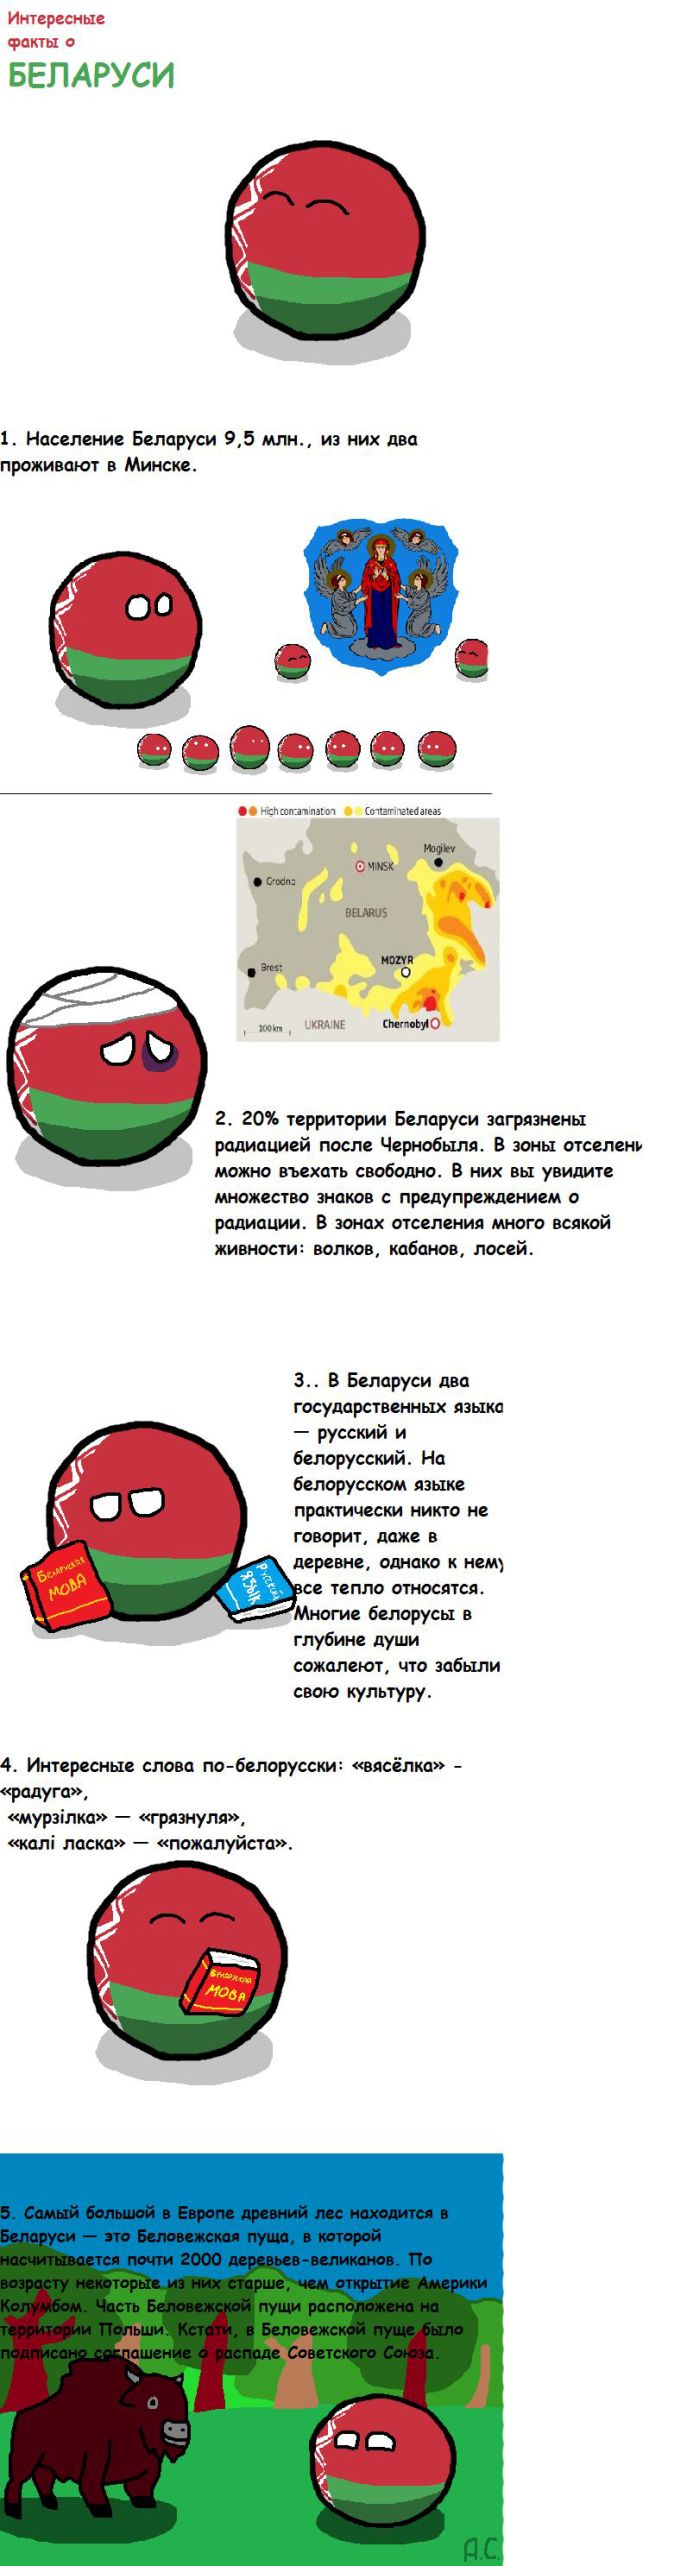 Интересные факты о Белоруссии (8 фото)